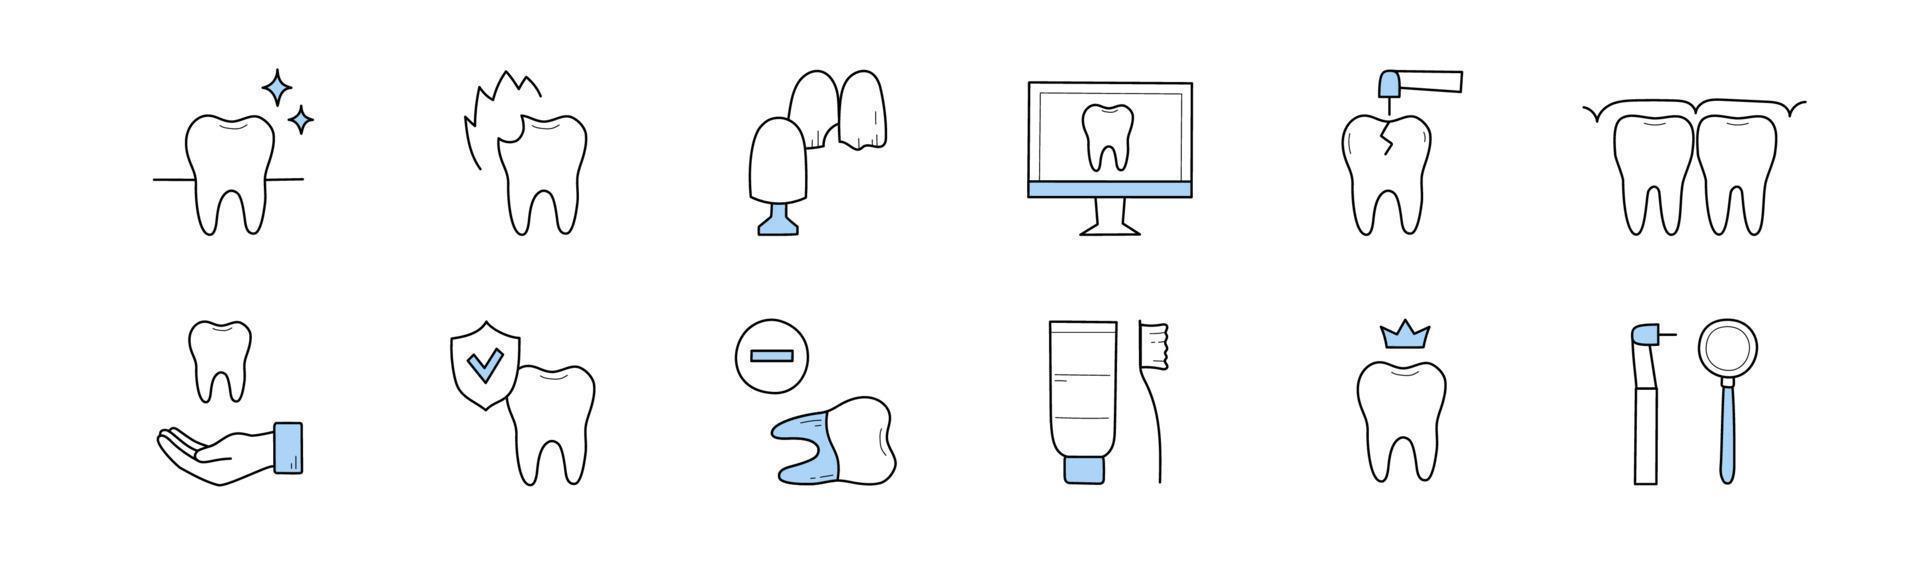 icônes de doodle de dentisterie et de stomatologie, ensemble de signes vecteur